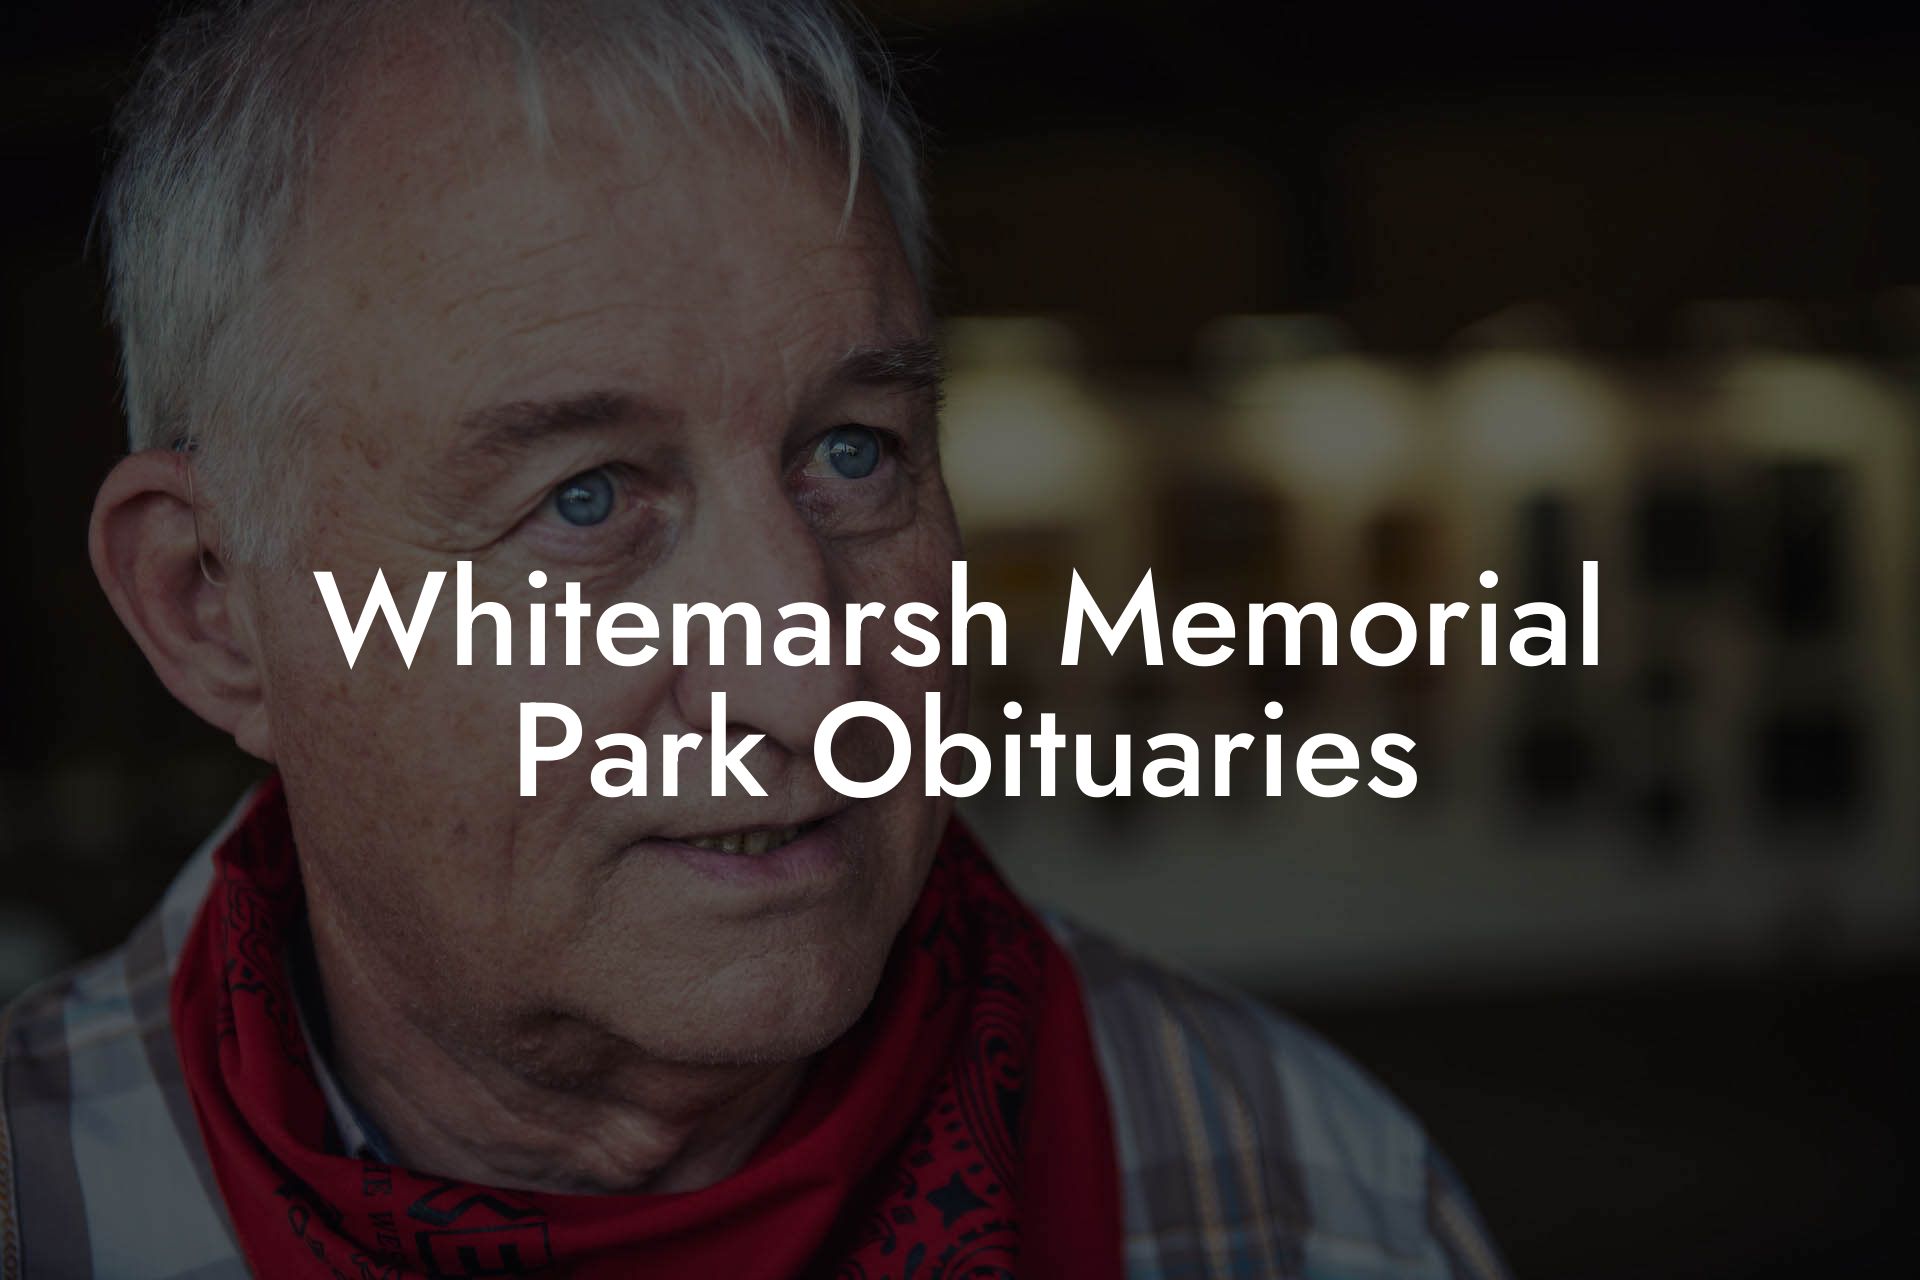 Whitemarsh Memorial Park Obituaries